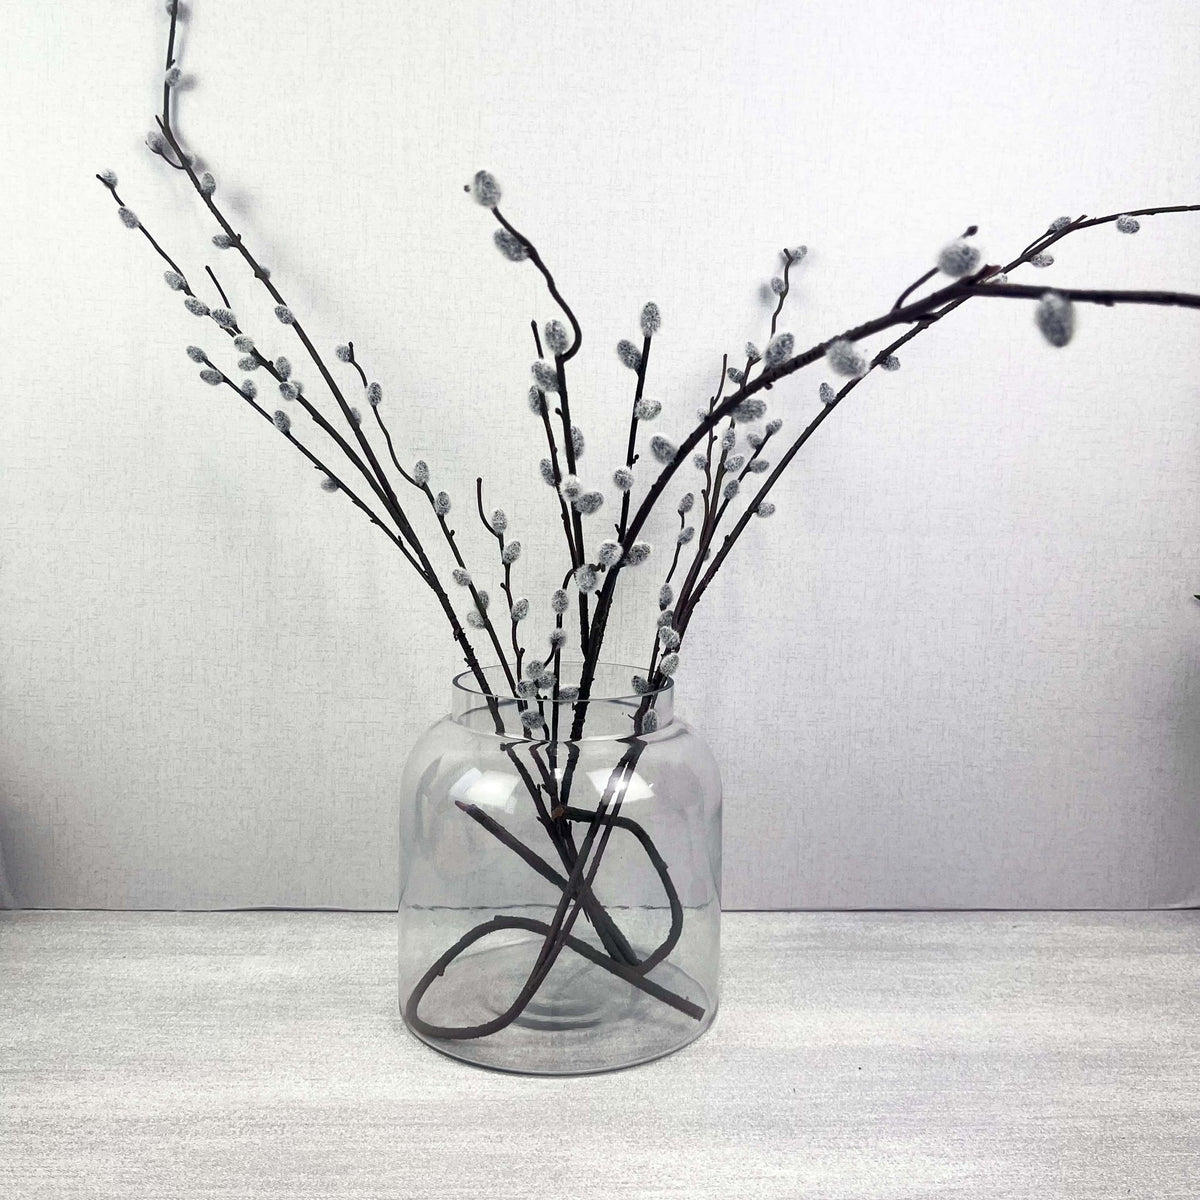 Magnitudo Small Glass Vase - Cherish Home